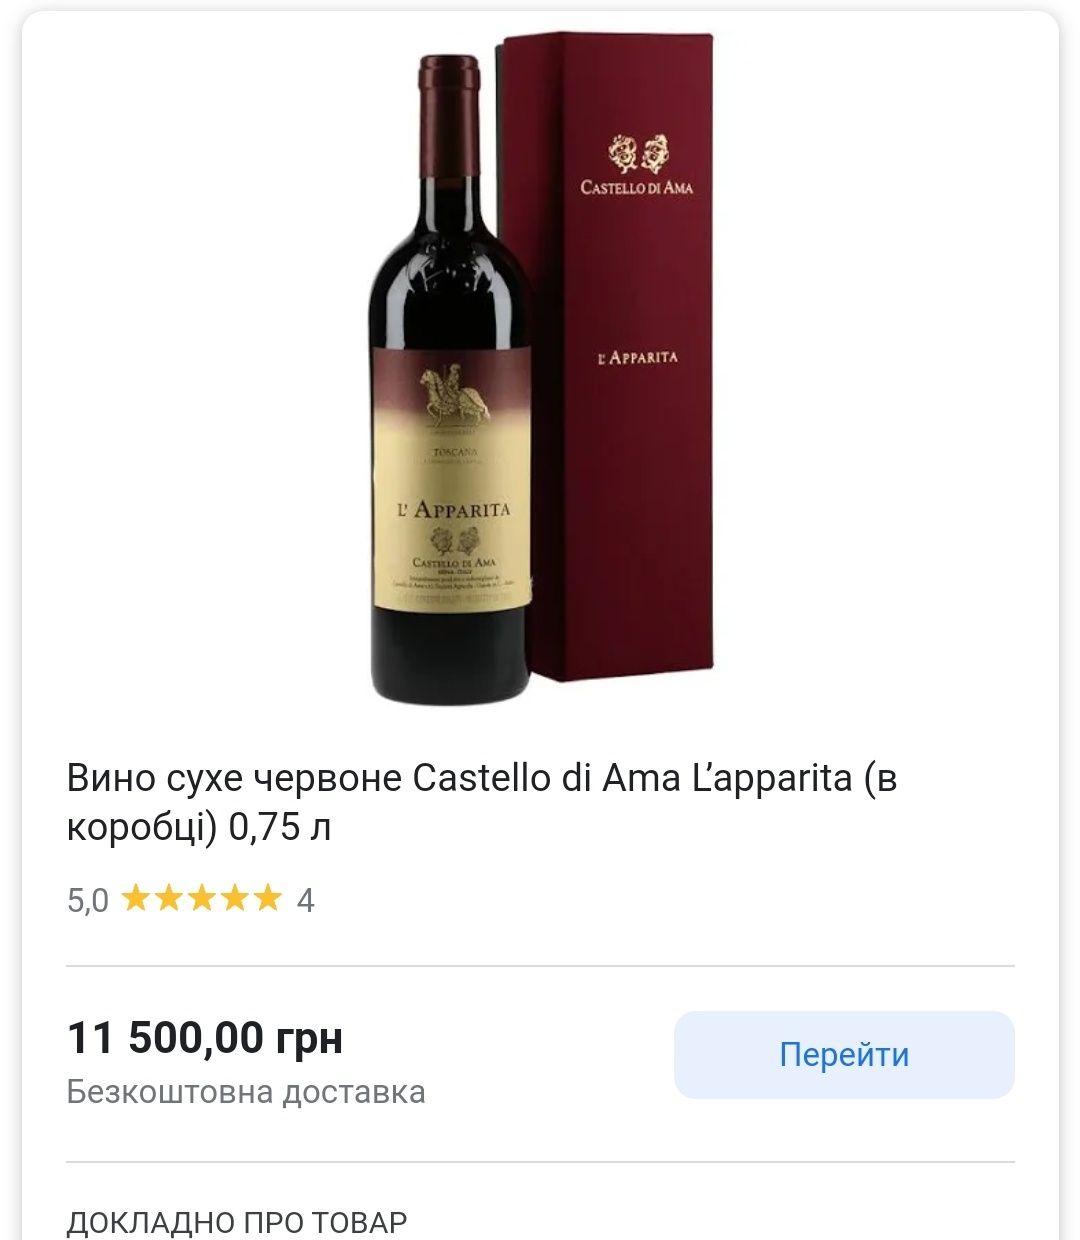 Коробка упаковка дорогого вина Castello di Ama